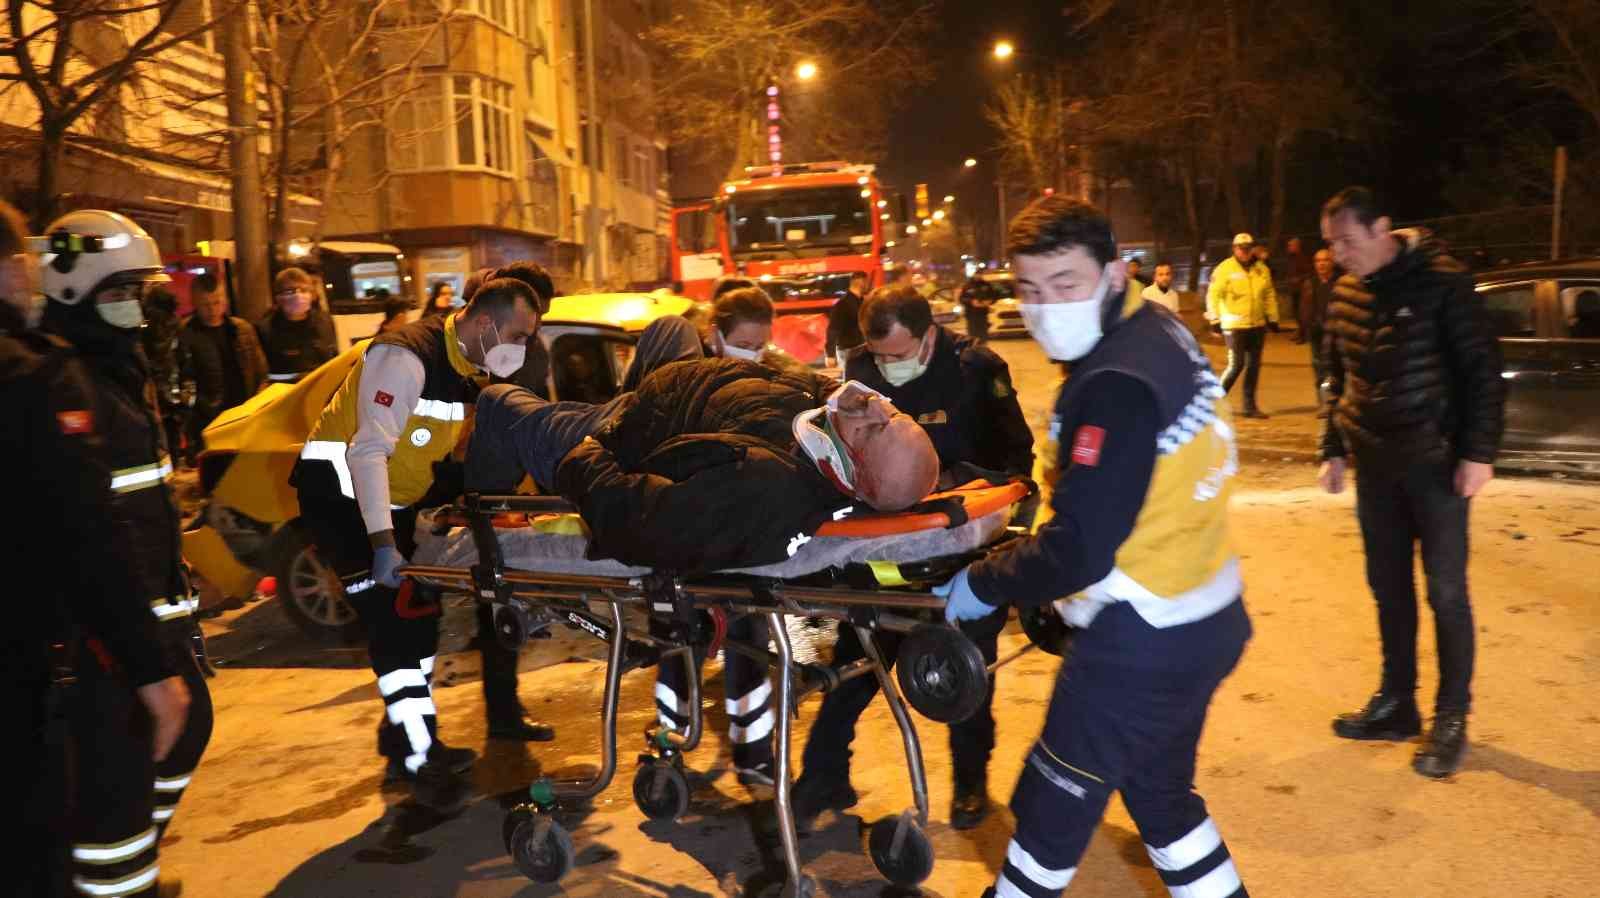 Edirne’de yaşanan kazada ortalık savaş alanına döndü #edirne